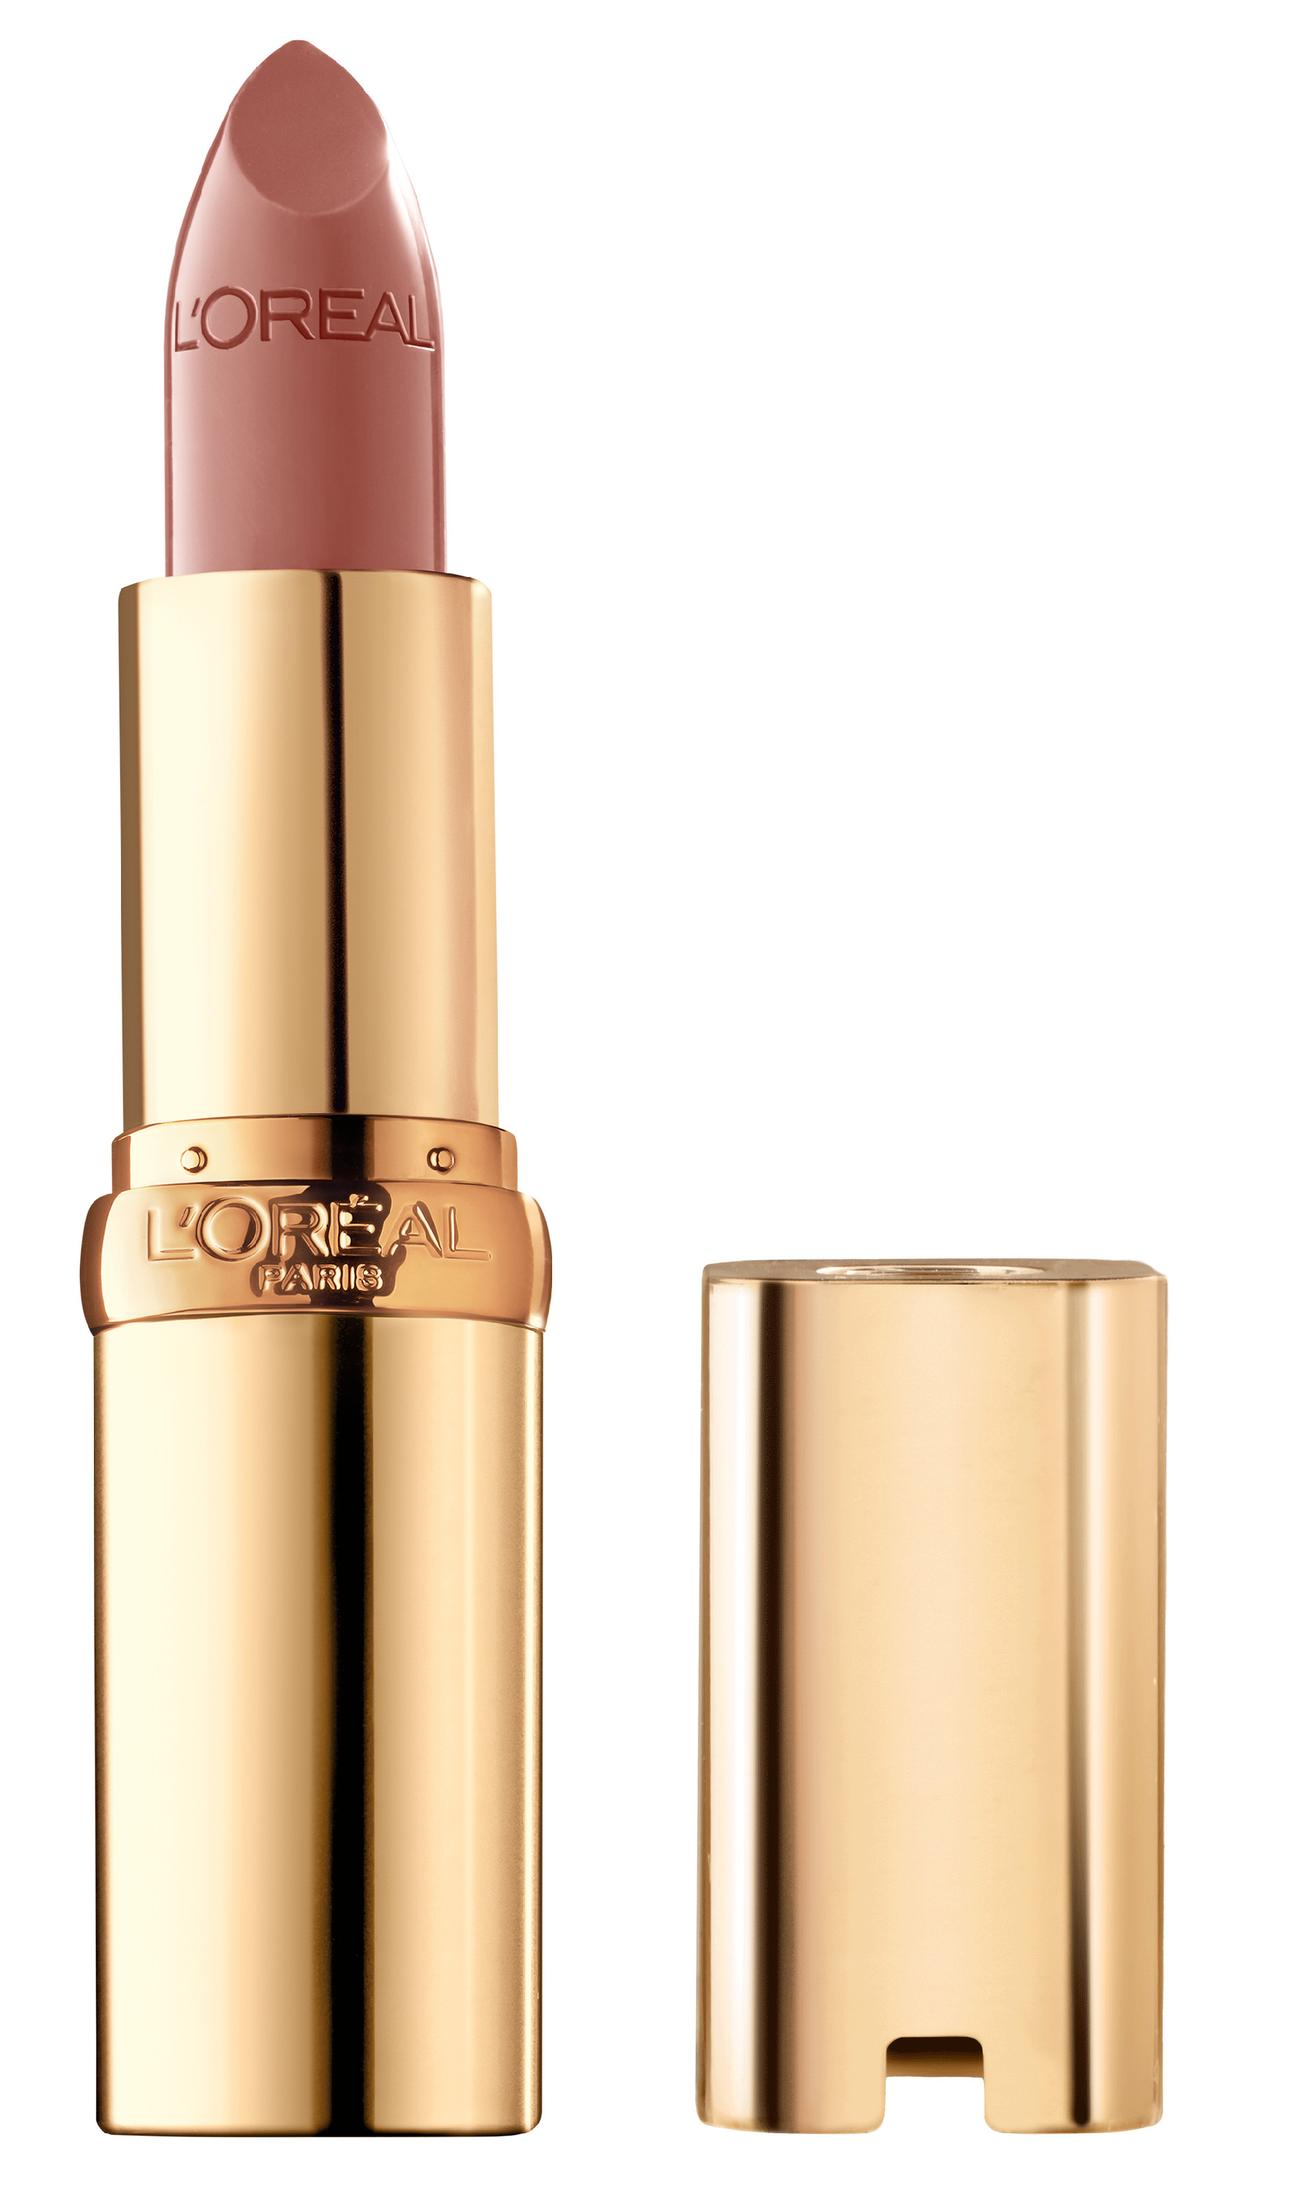 L'Oreal Paris Colour Riche Original Satin Lipstick for Moisturized Lips, 800 Fairest Nude - image 1 of 5